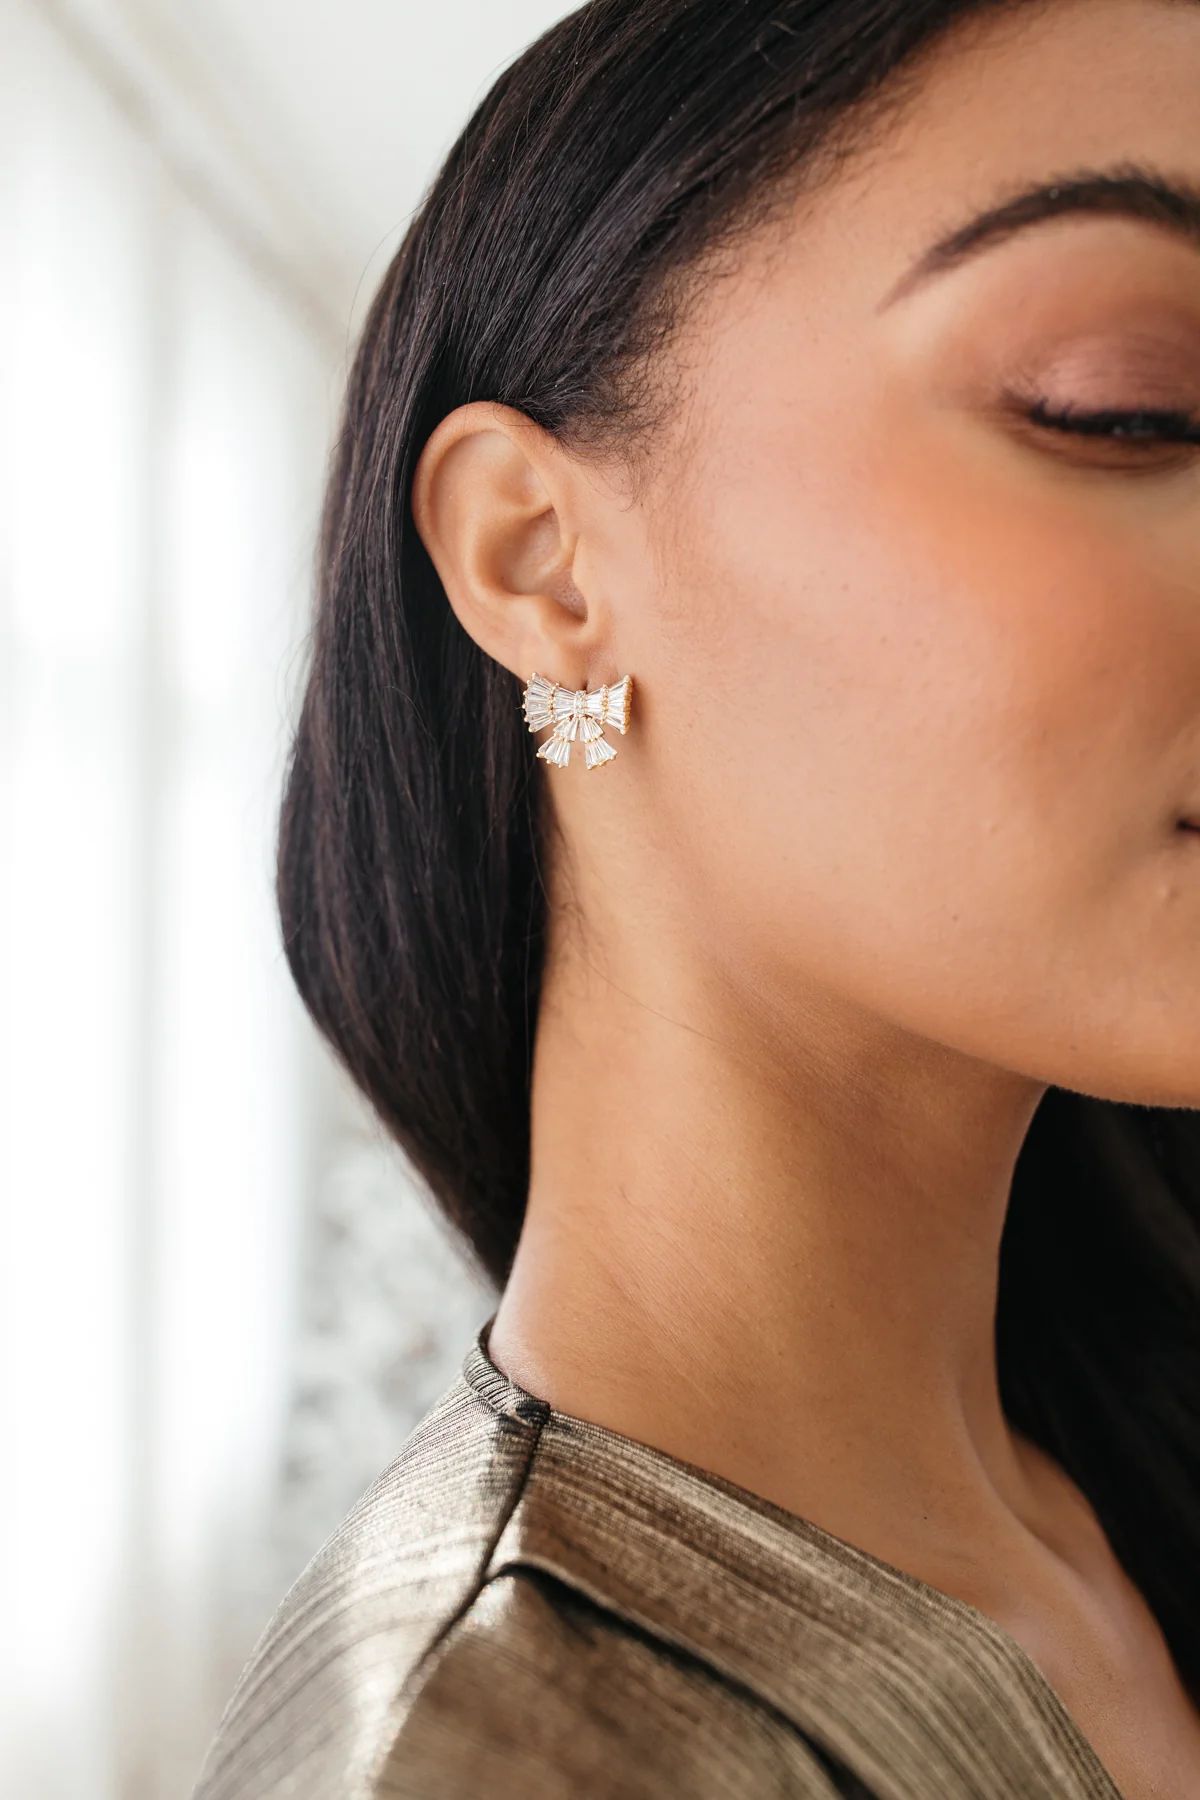 RESTOCK - Bow Glitter Earrings | The Post